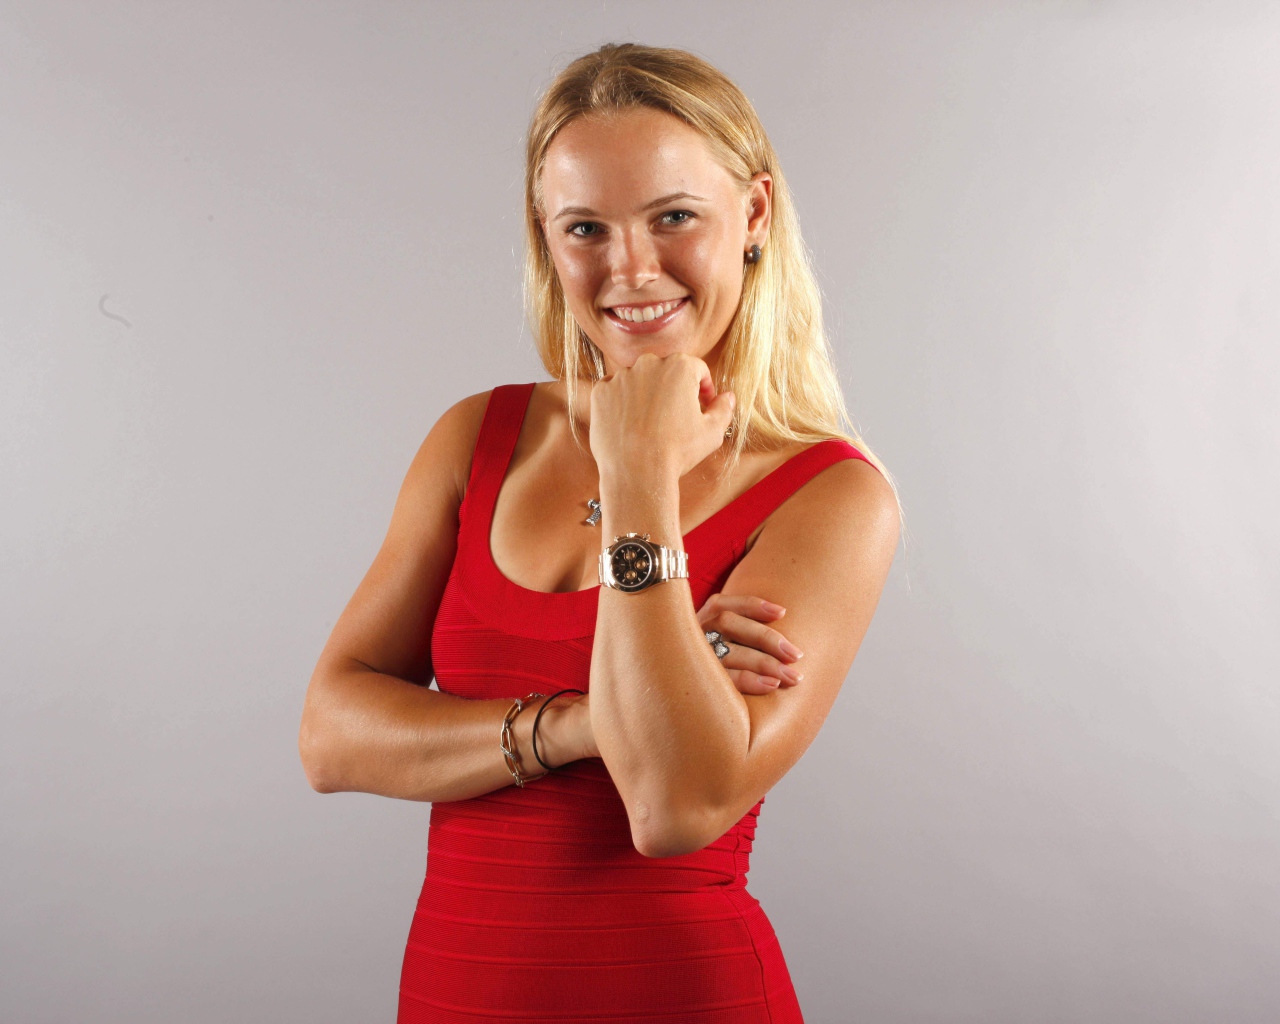 Красивая девушка в красном, датская теннисистка Каролина Возняцки